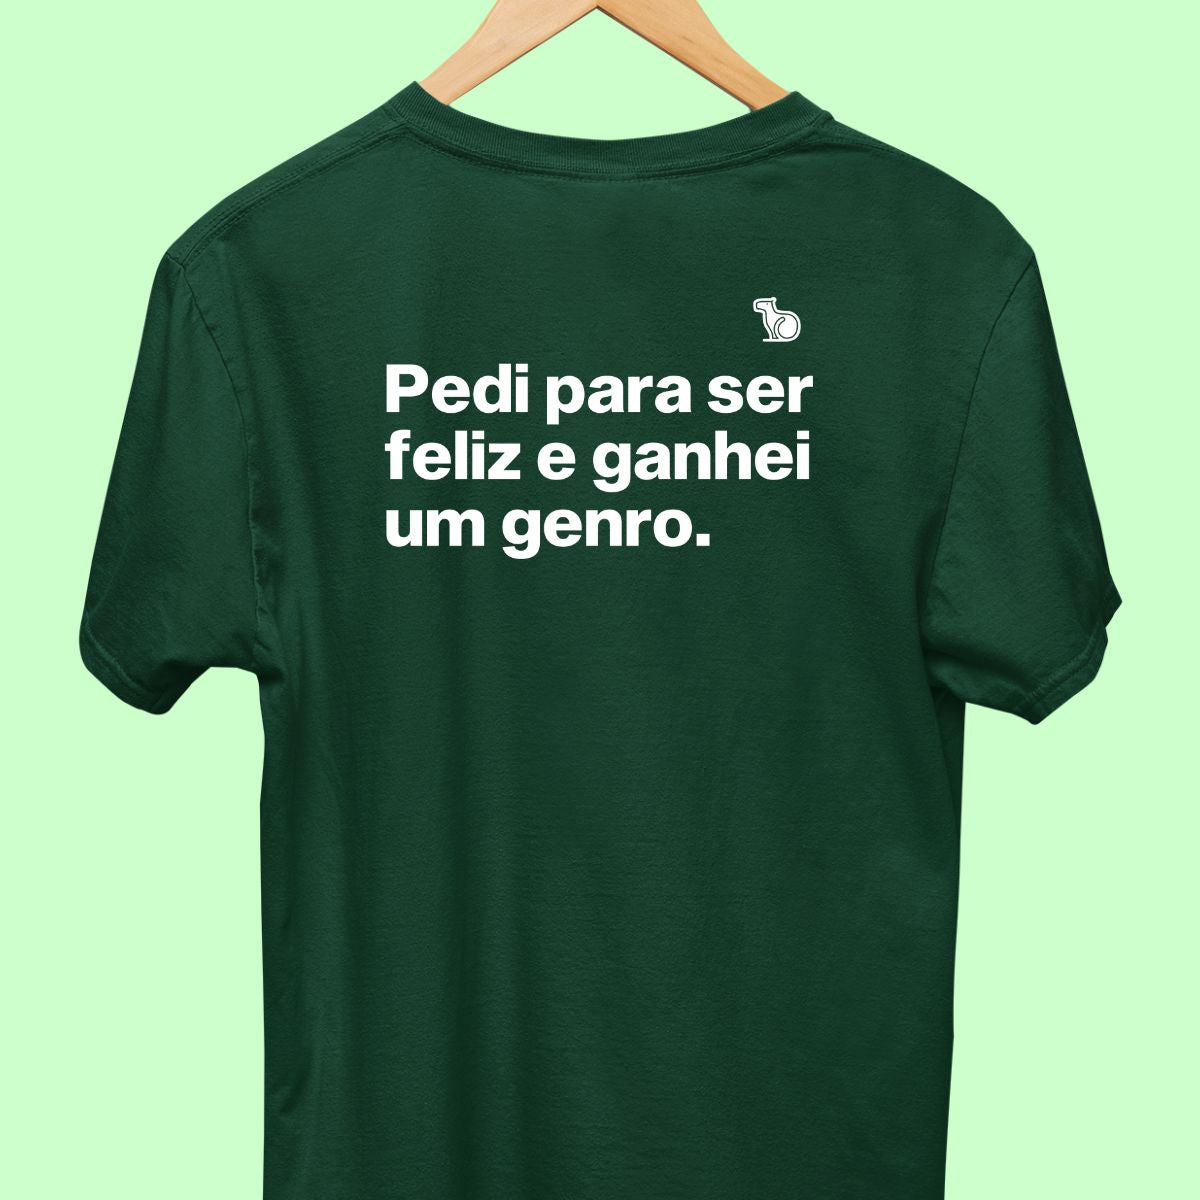 Camiseta com a frase "pedi para ser feliz e ganhei um genro." masculina verde.